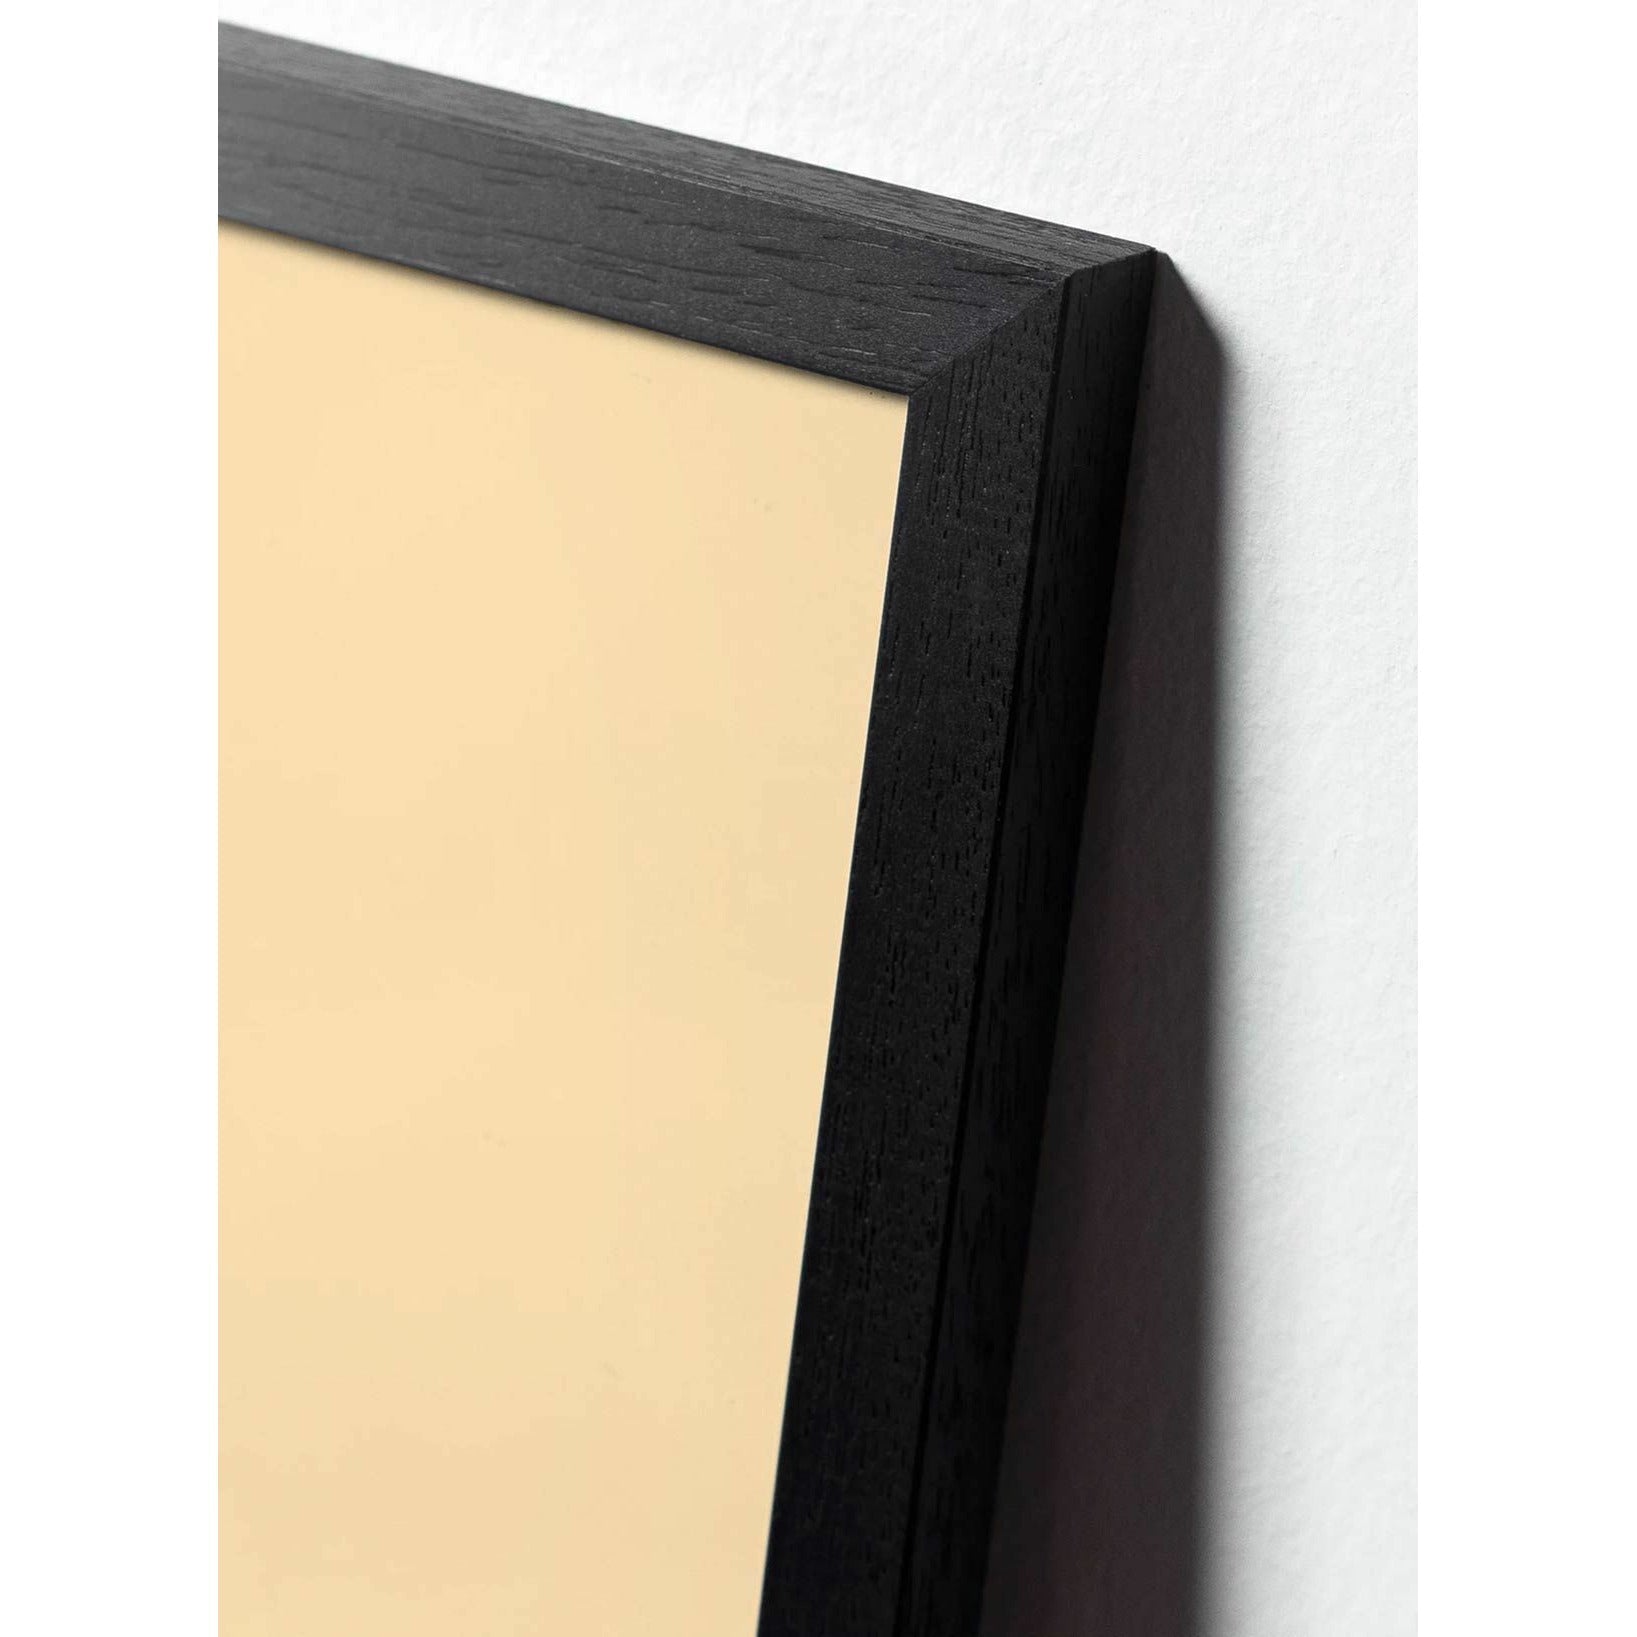 Klasický plakát s kapkou mozků, rám v černém lakovaném dřevu 70x100 cm, pískově barevné pozadí